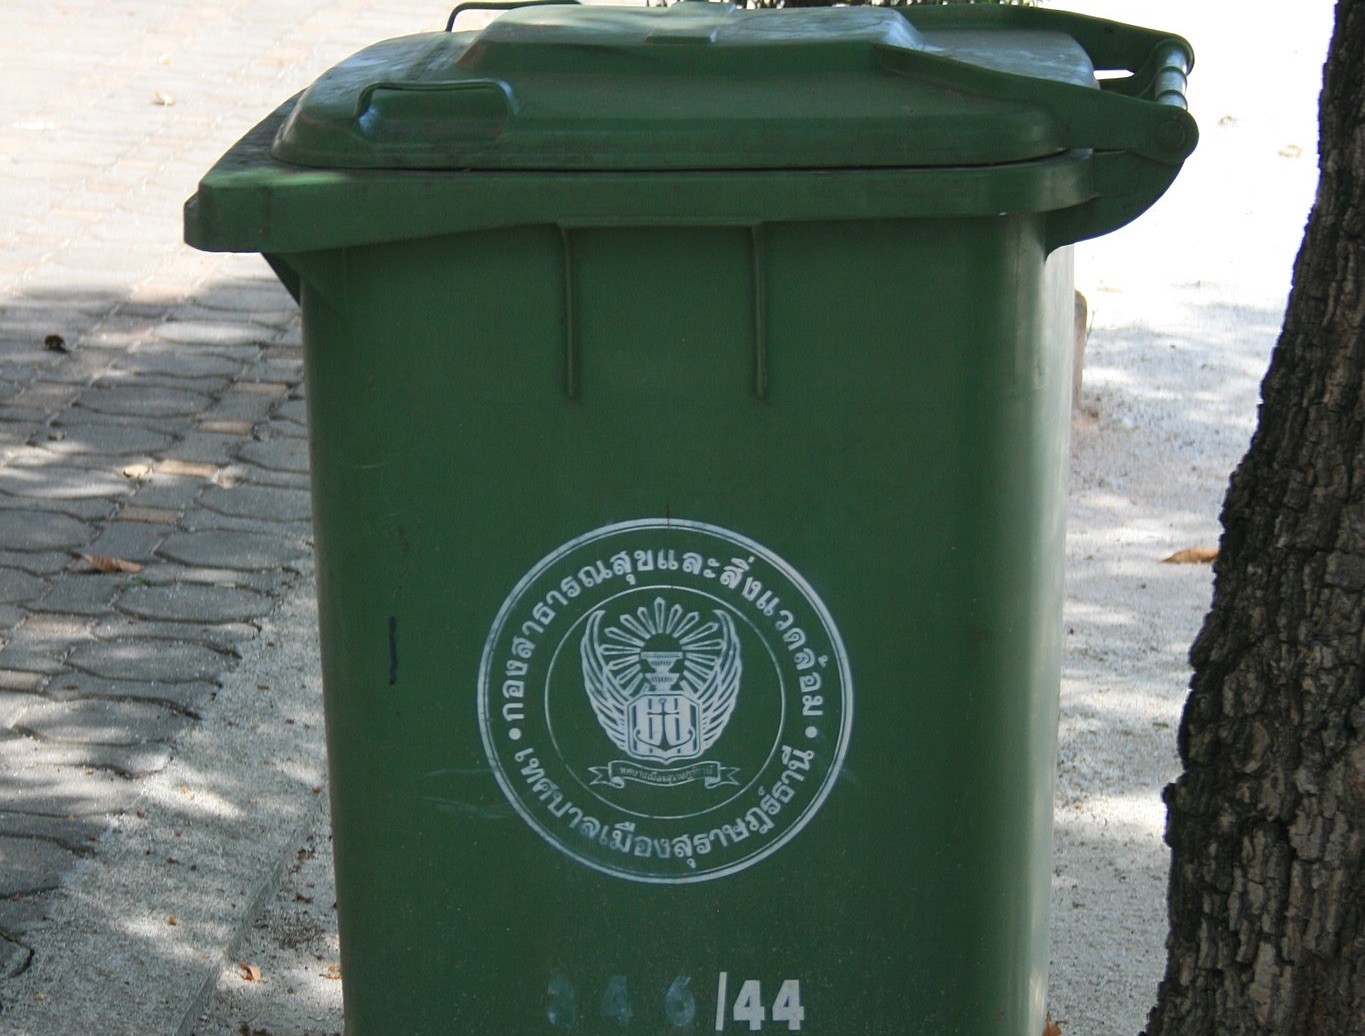 Trash bin in Thailand